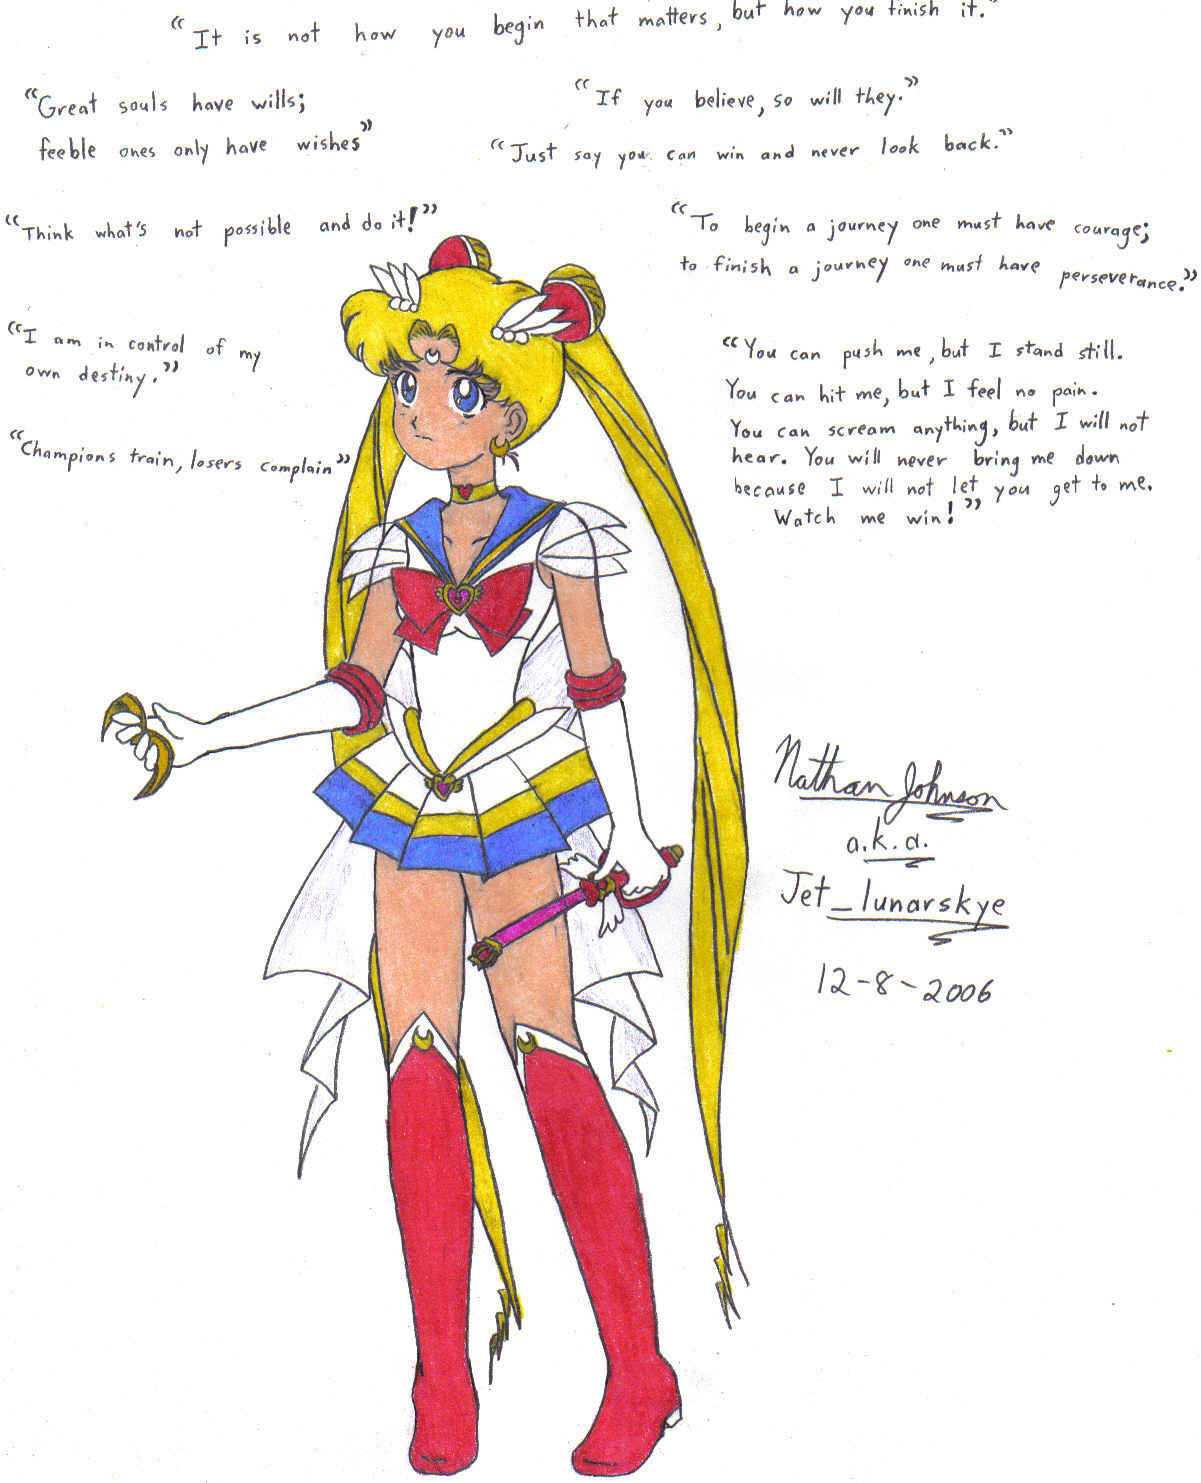 Sailor Moon and motivation by Jet_lunarskye